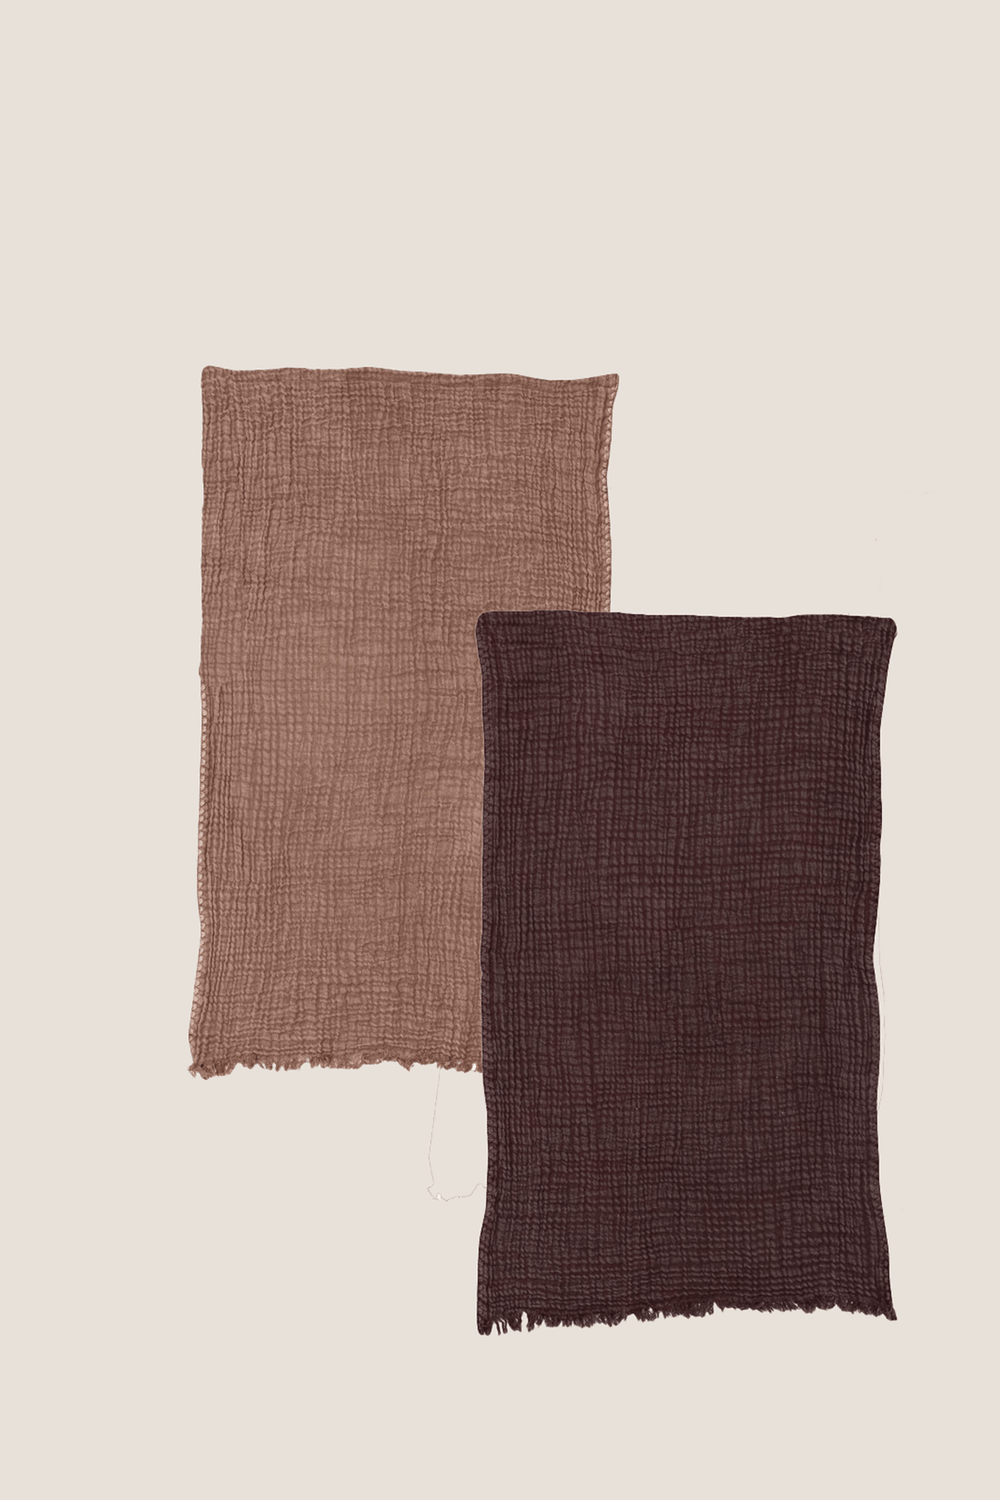 Embroidered Fringe Cotton Tea Towels Set - Heyday